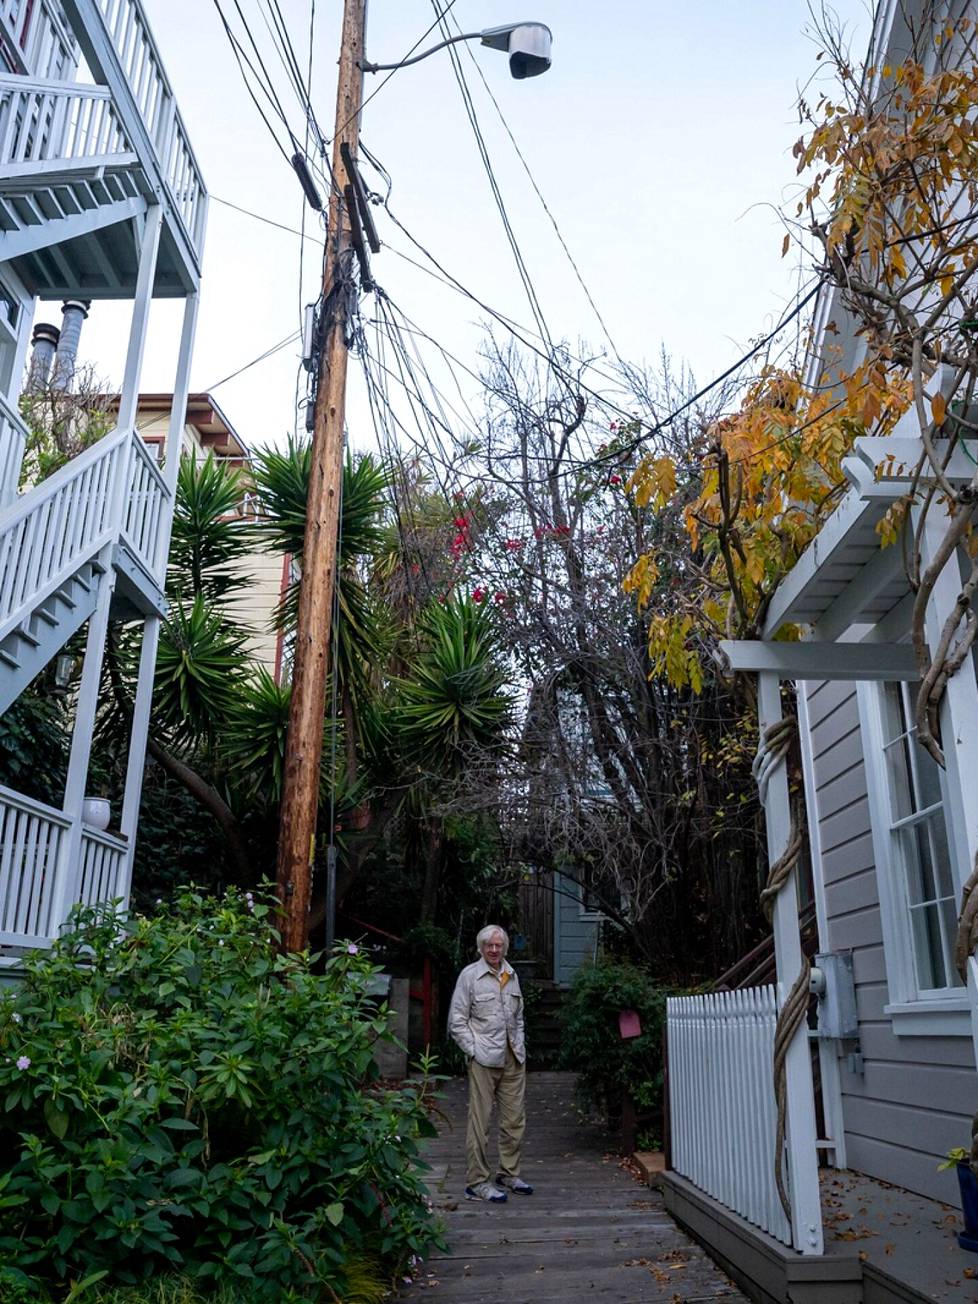 Miljoona-asuntojen viime vuosisadan sähkötolpat. 20 vuotta sitten tarjottiin mahdollisuutta laittaa johdon kuntoon mutta kustannukset olisi pitänyt kattaa itse, eivätkä naapurit päässeet asiasta sopuun, kertoo Joe Luttrell San Franciscon Telegraph Hillin arvoalueella.